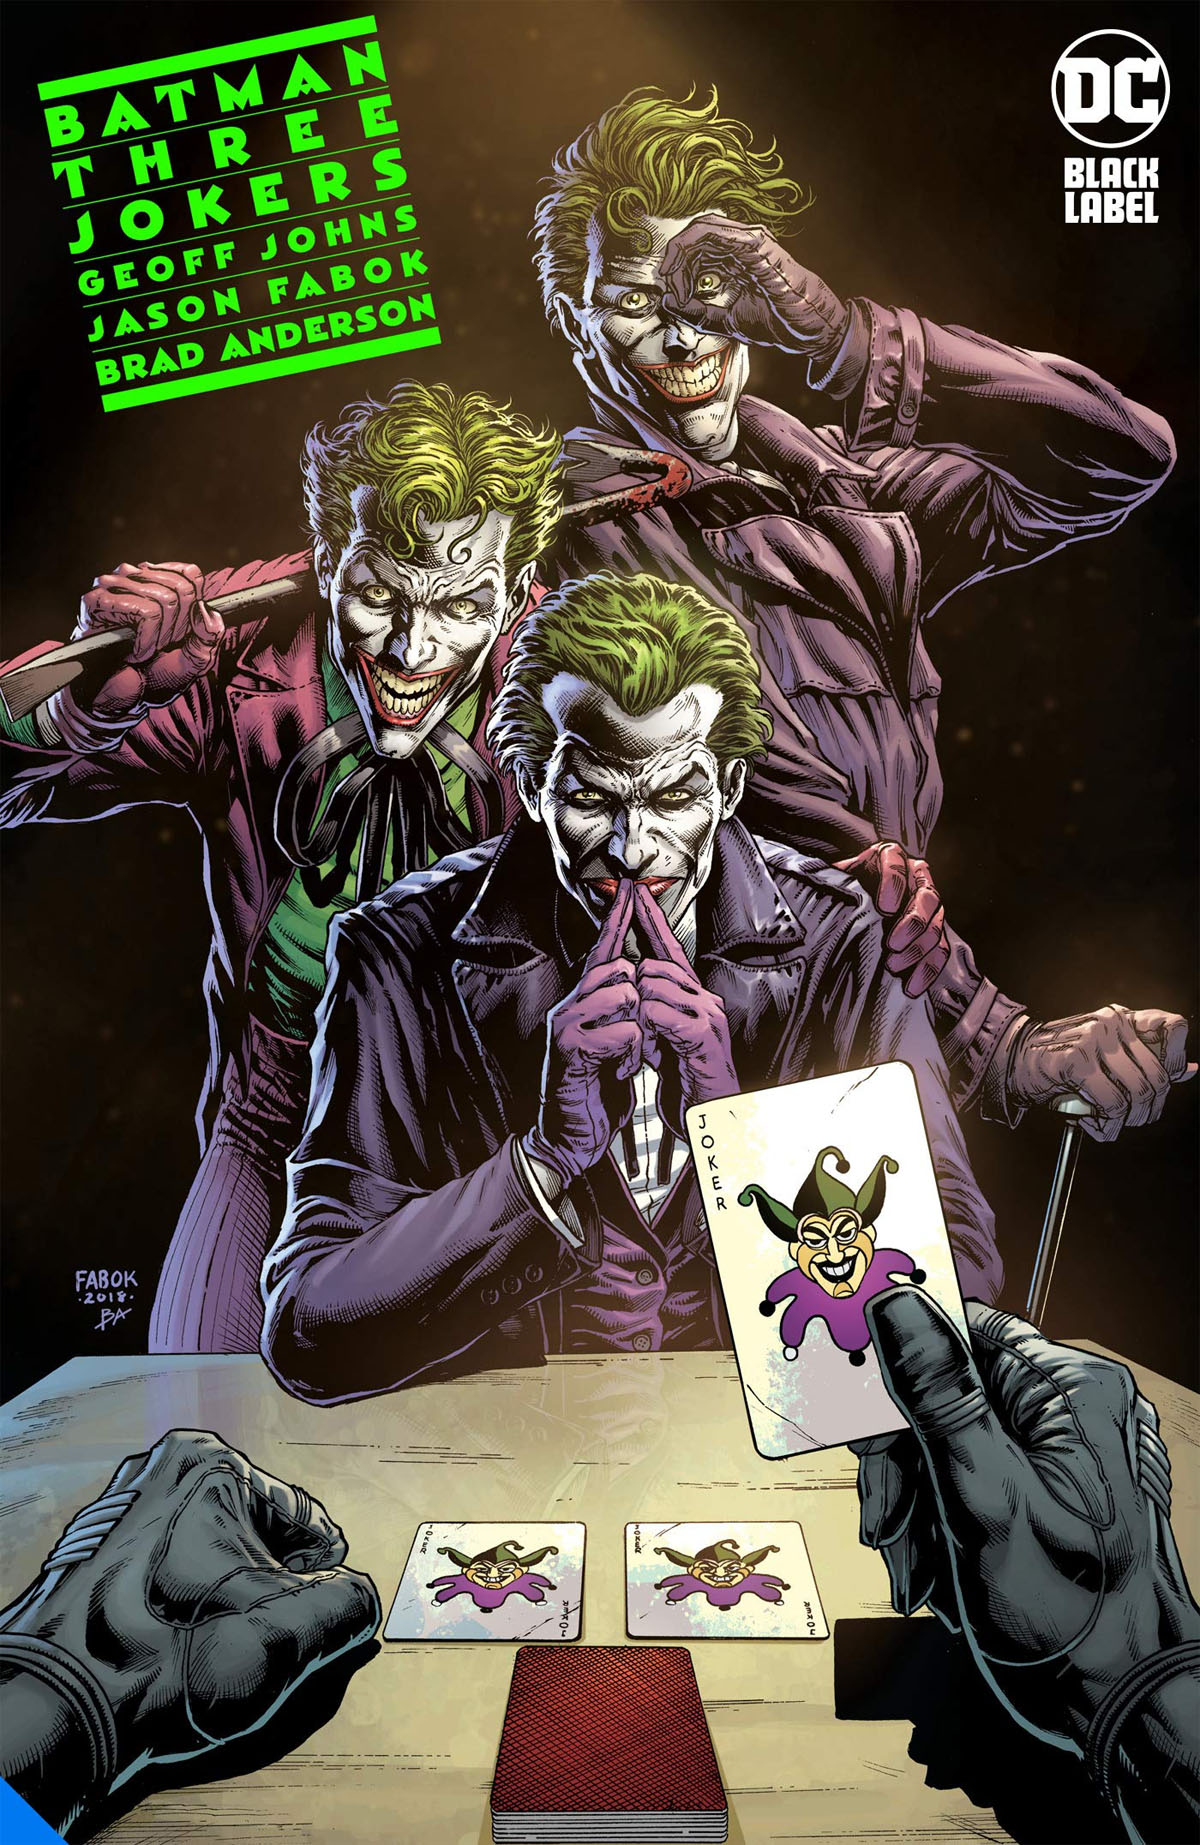 Batman: Three Jokers #1 cover